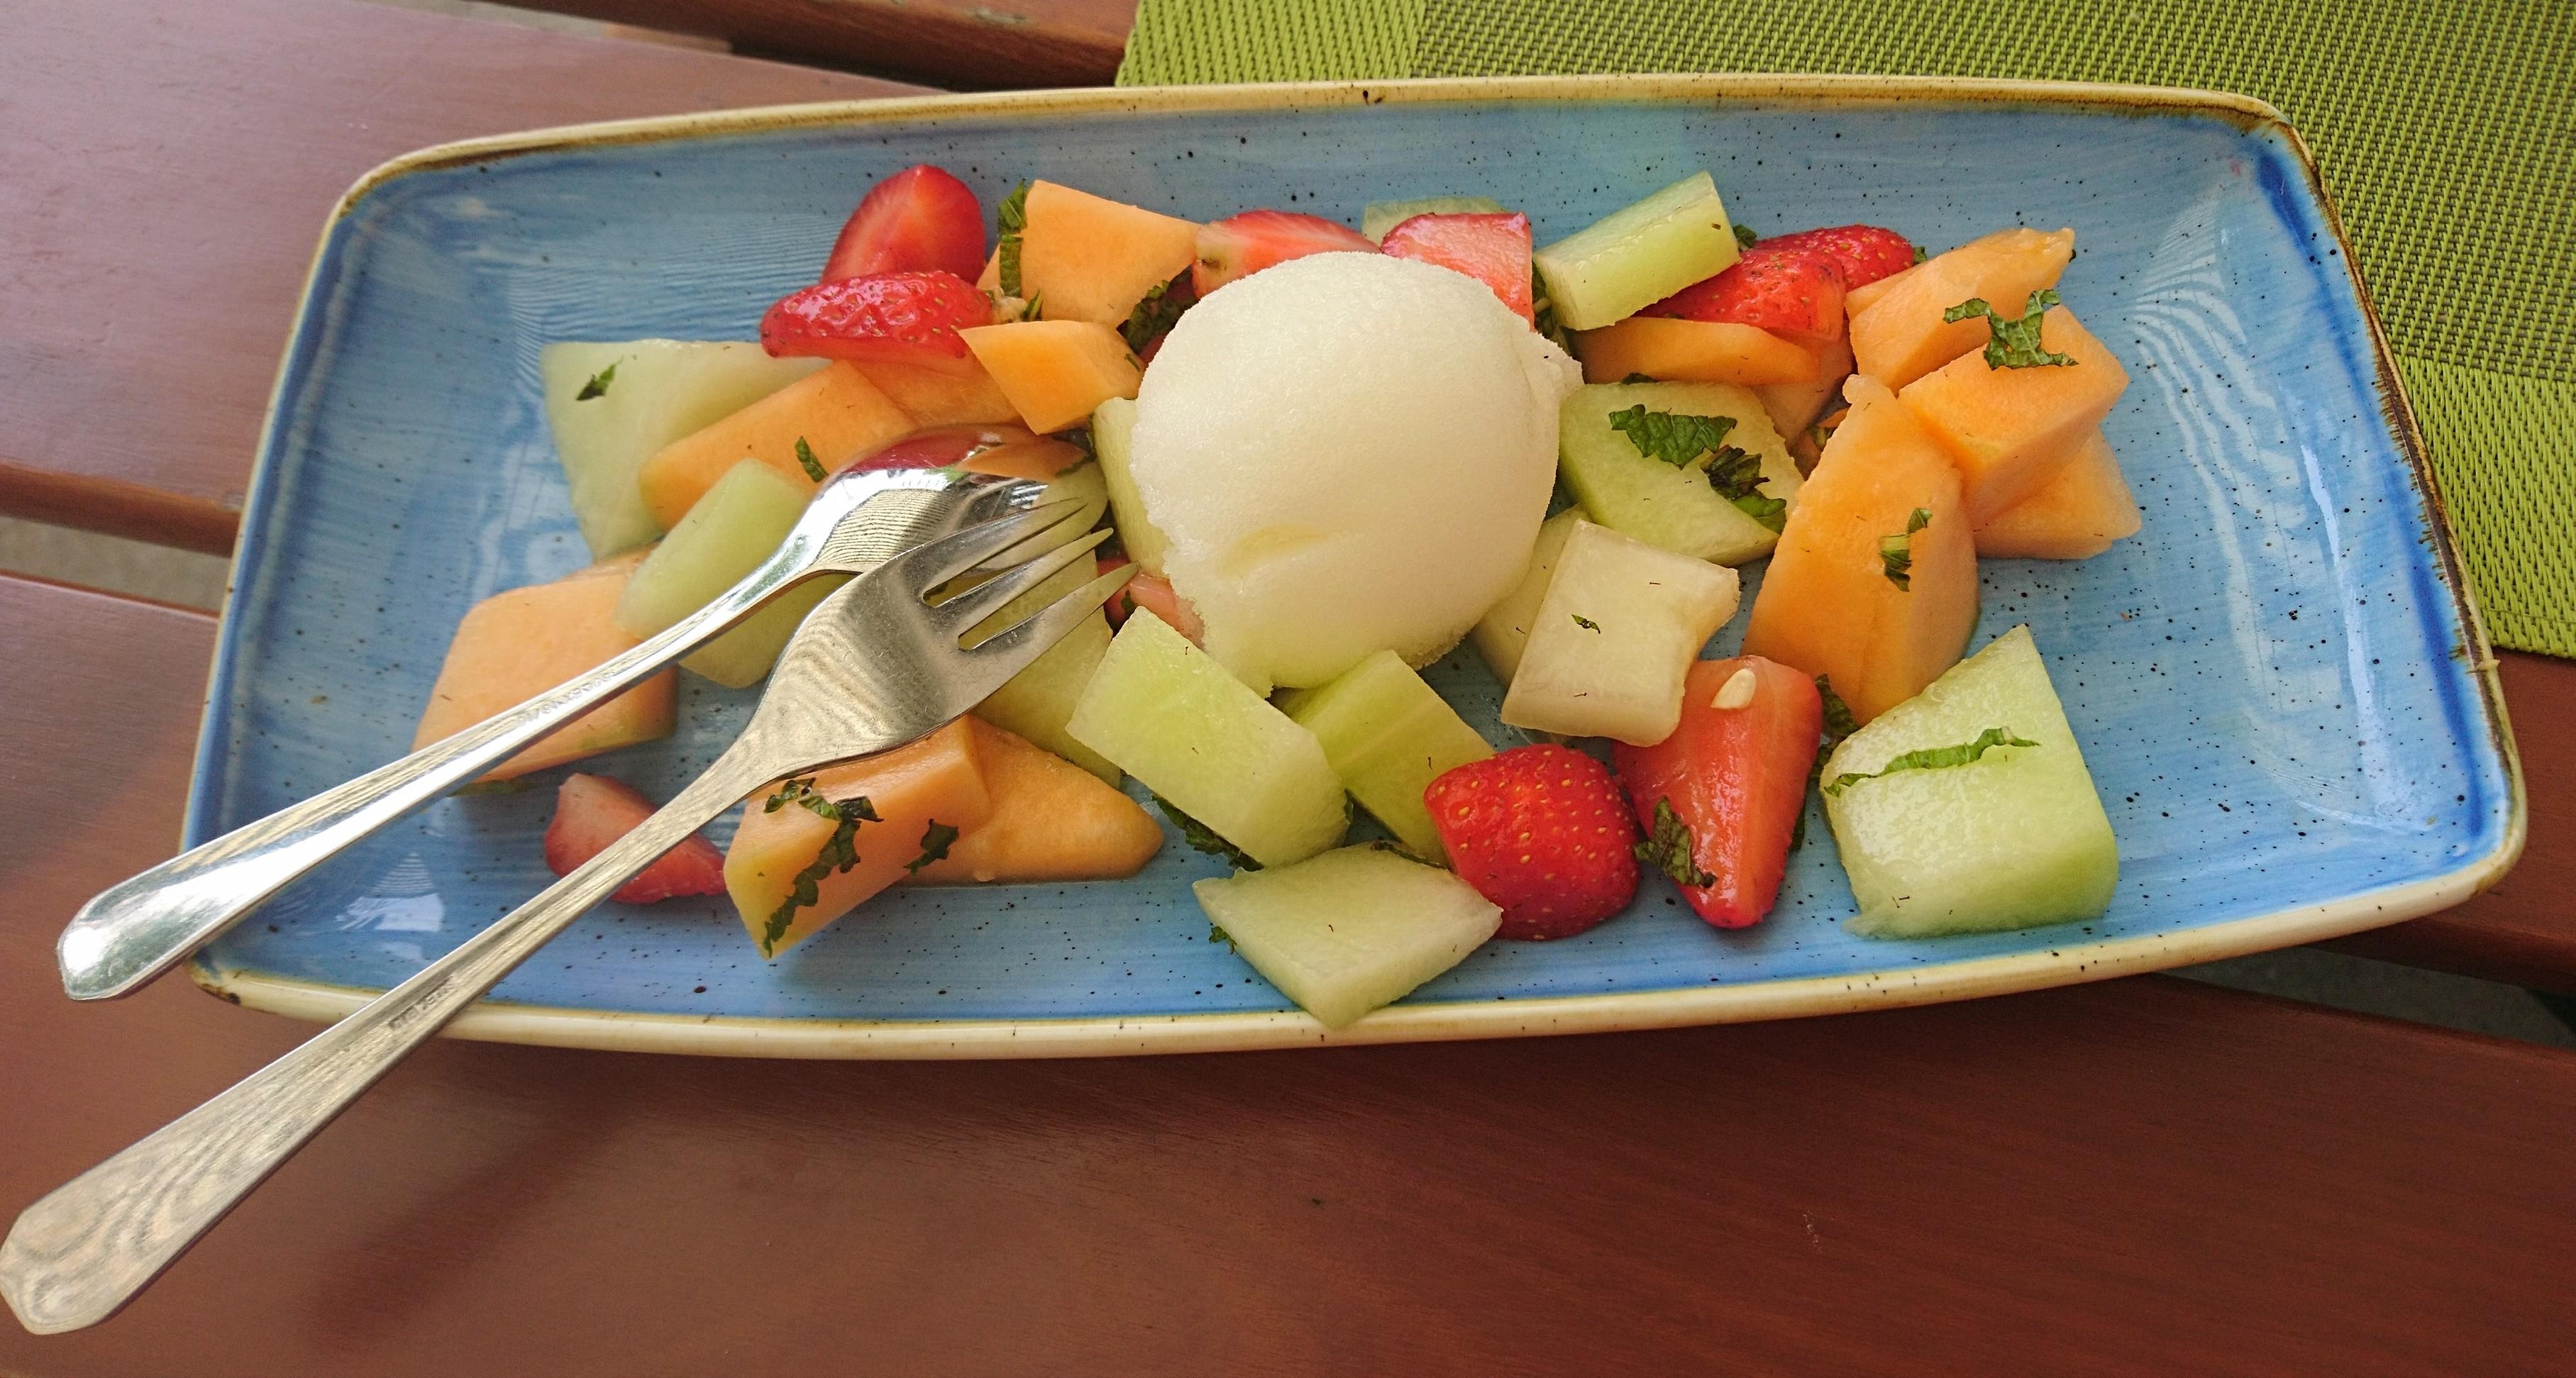 Kleine Erfrischung gefällig?
Melonen-Mix mit Erdbeeren und Zitronensorbet auf schönem Churchill Stonecast #Porzellan. 